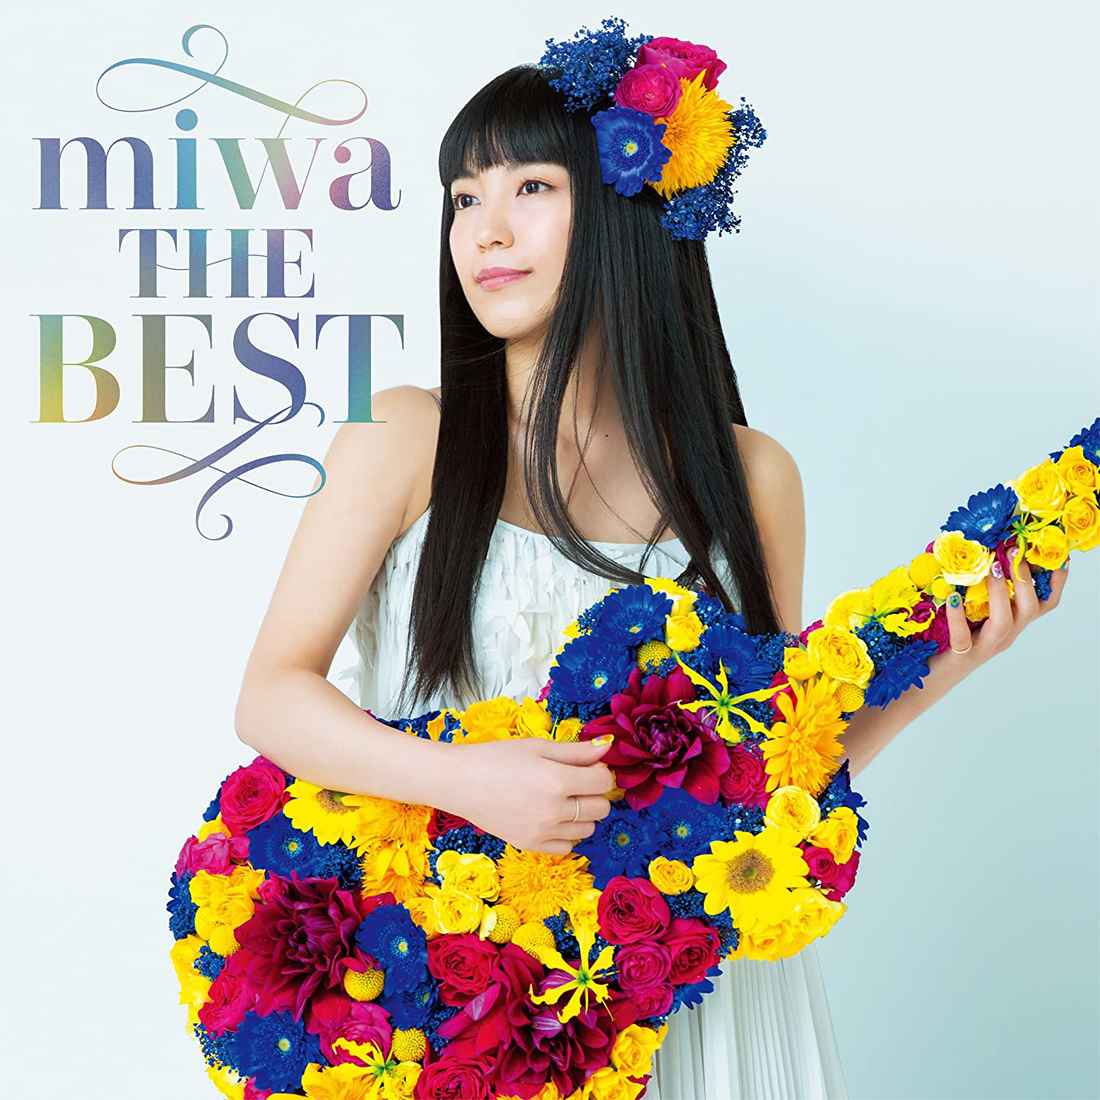 20211031.1506.04 miwa - The Best (2018) (Blu-Ray) cover.jpg